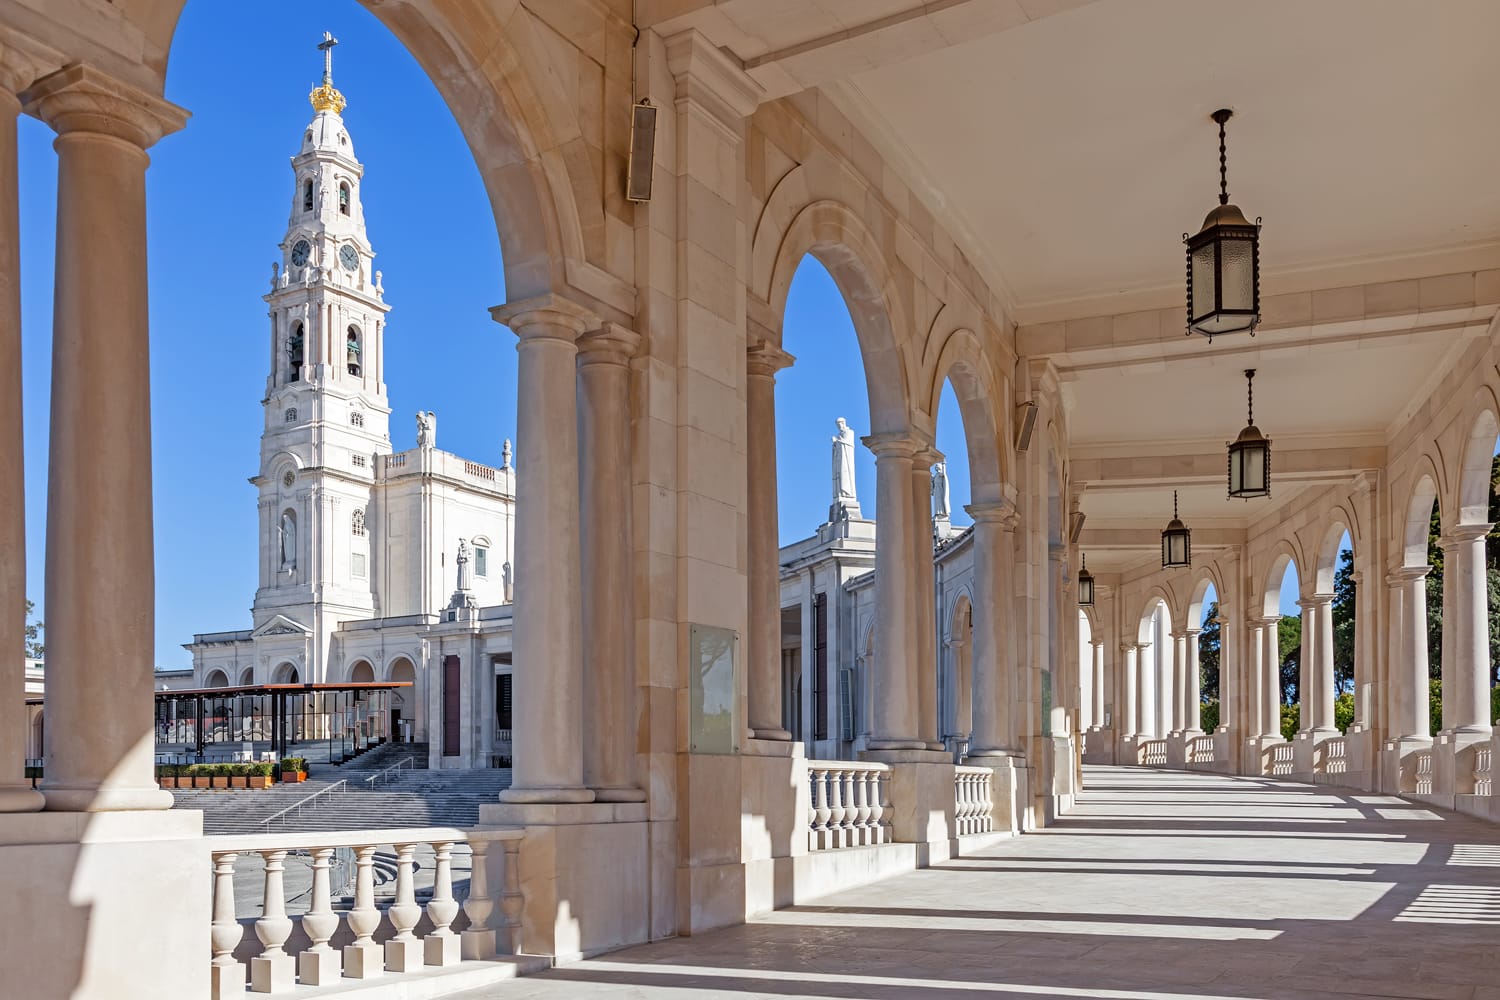 Tempat Suci Fatima, Portugal.  Basilika Bunda Rosario dilihat dari dan melalui barisan tiang.  Salah satu Kuil Maria yang paling penting dan lokasi ziarah bagi umat Katolik